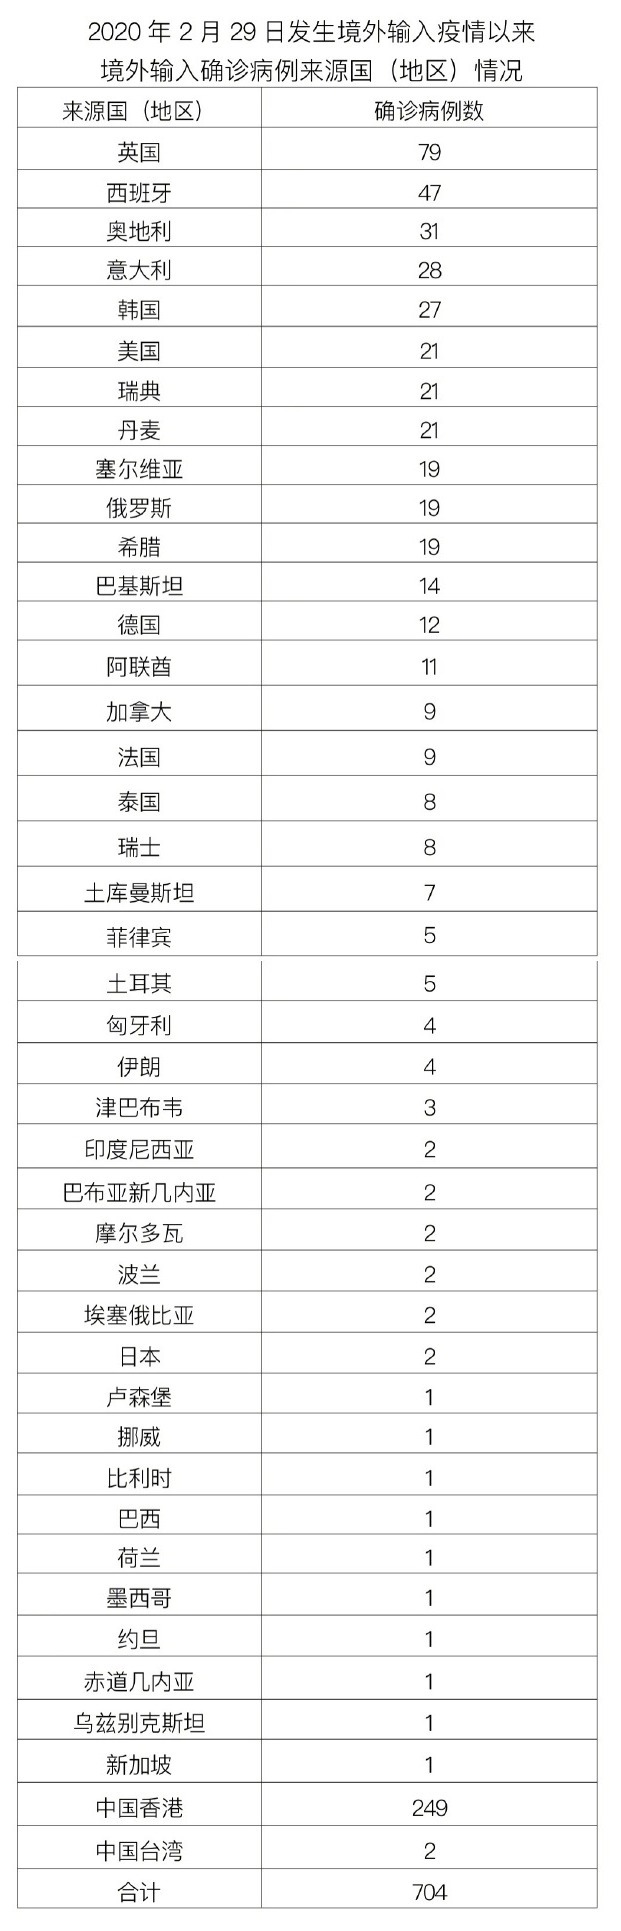 北京昨日新增本土31+3 含在校学生